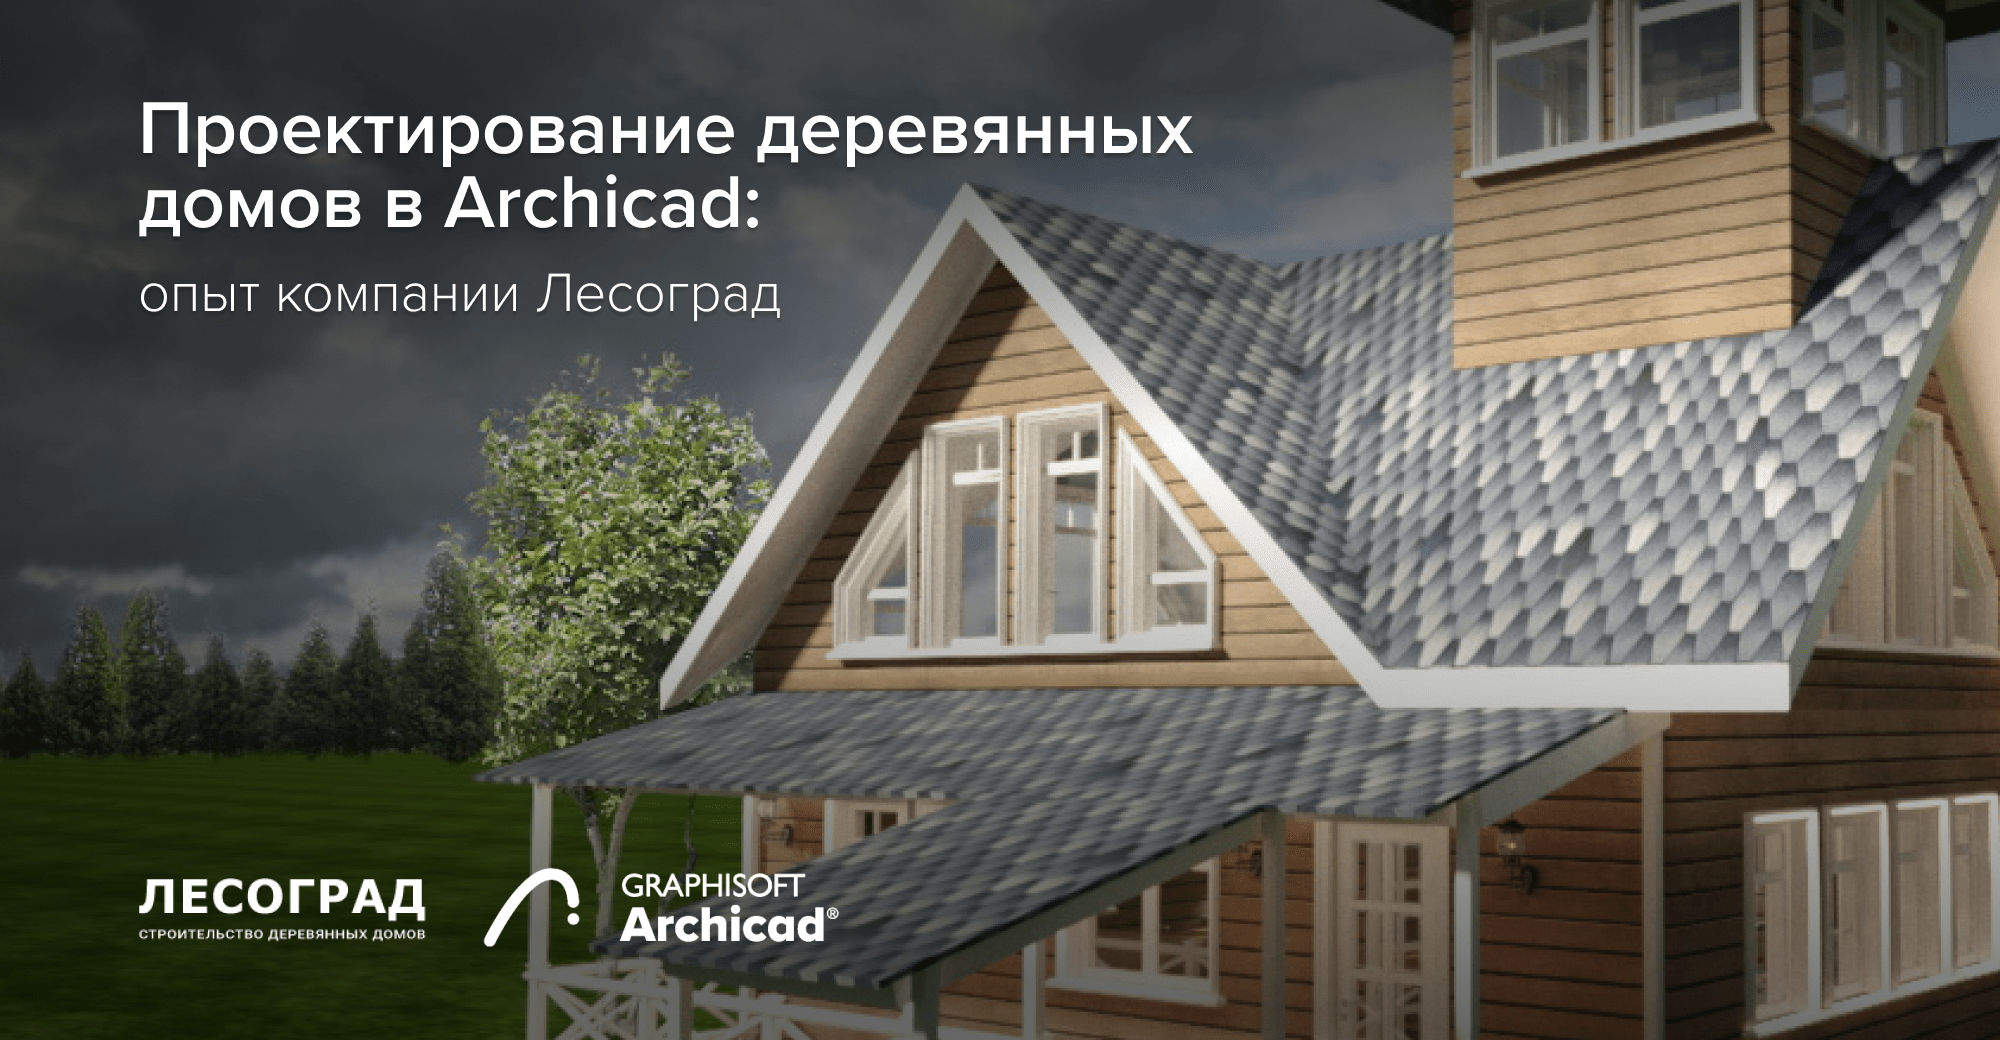 Проектирование деревянных домов в Archicad: опыт компании Лесоград